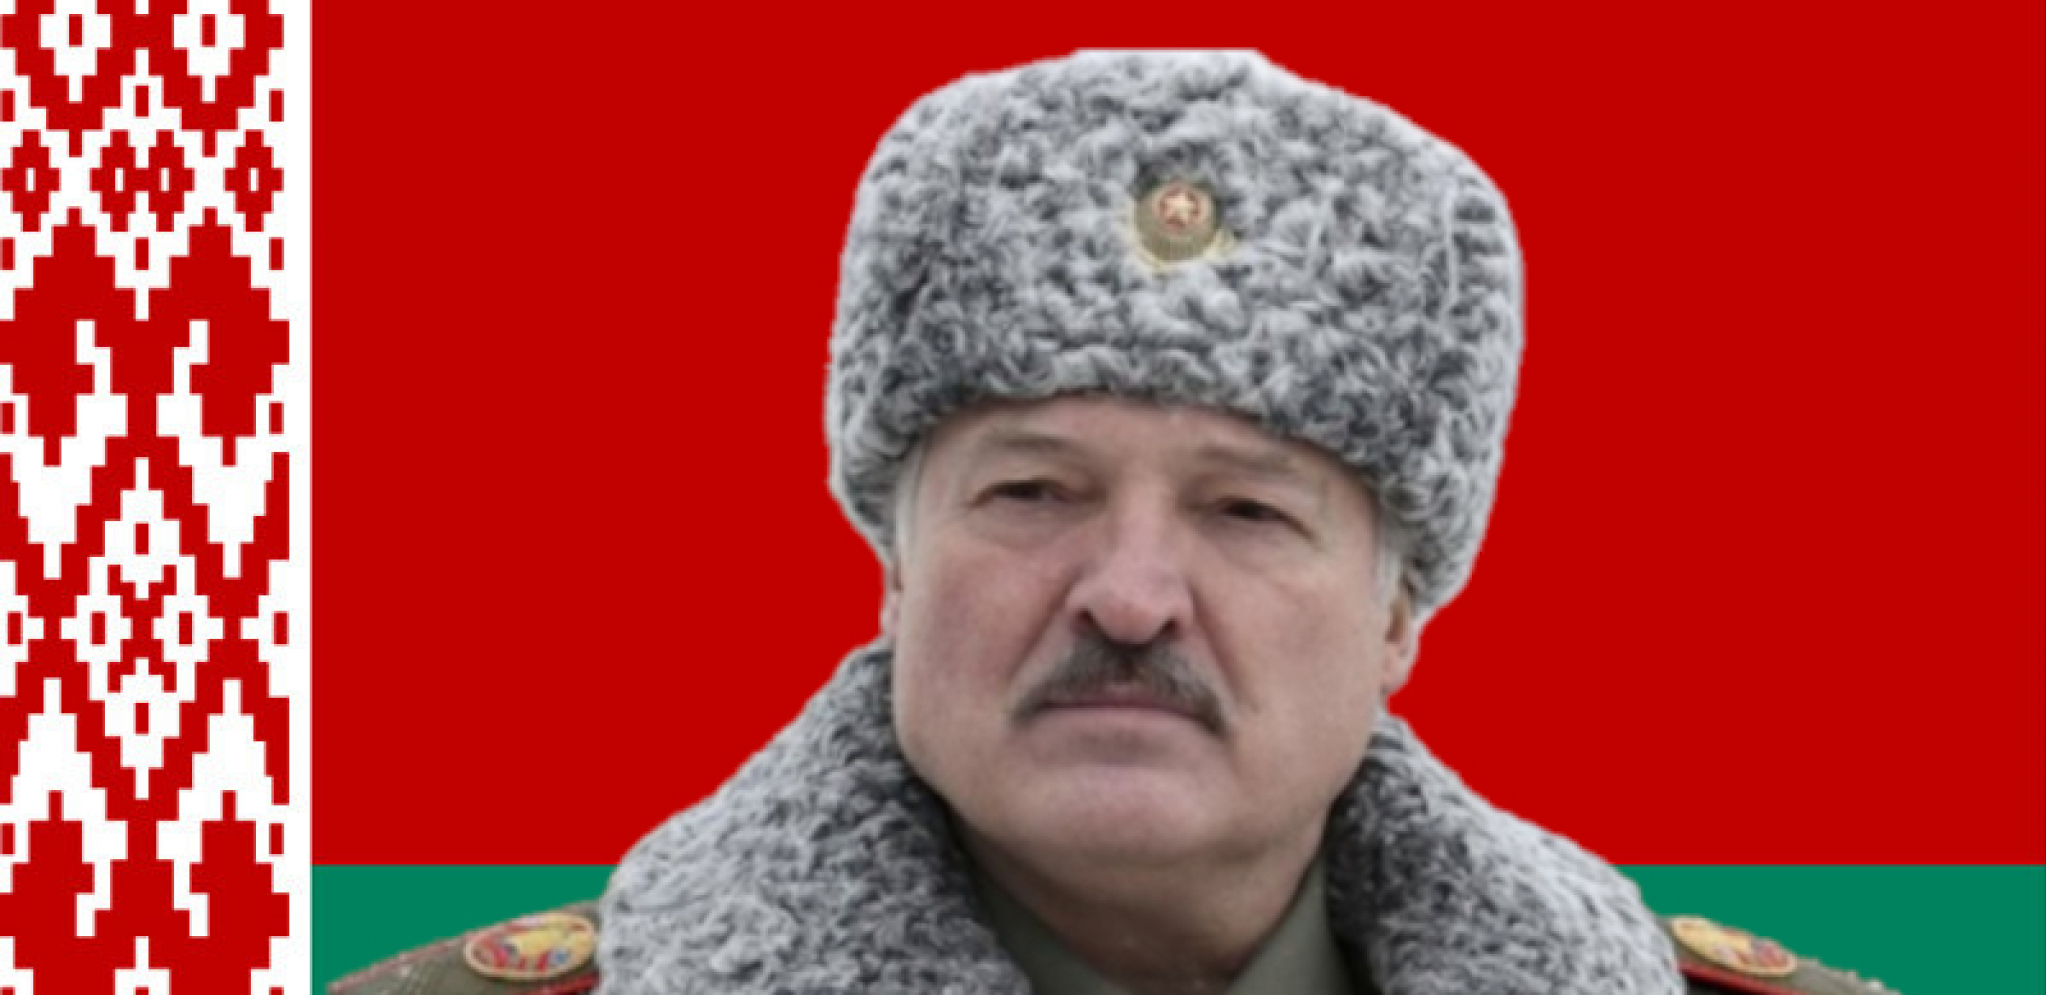 SUROVI PLAN ZAPADA DA BELORUSIJU OBRIŠE SA MAPE SVETA Lukašenko progovorio o zastrašujućoj akciji protiv njegove zemlje